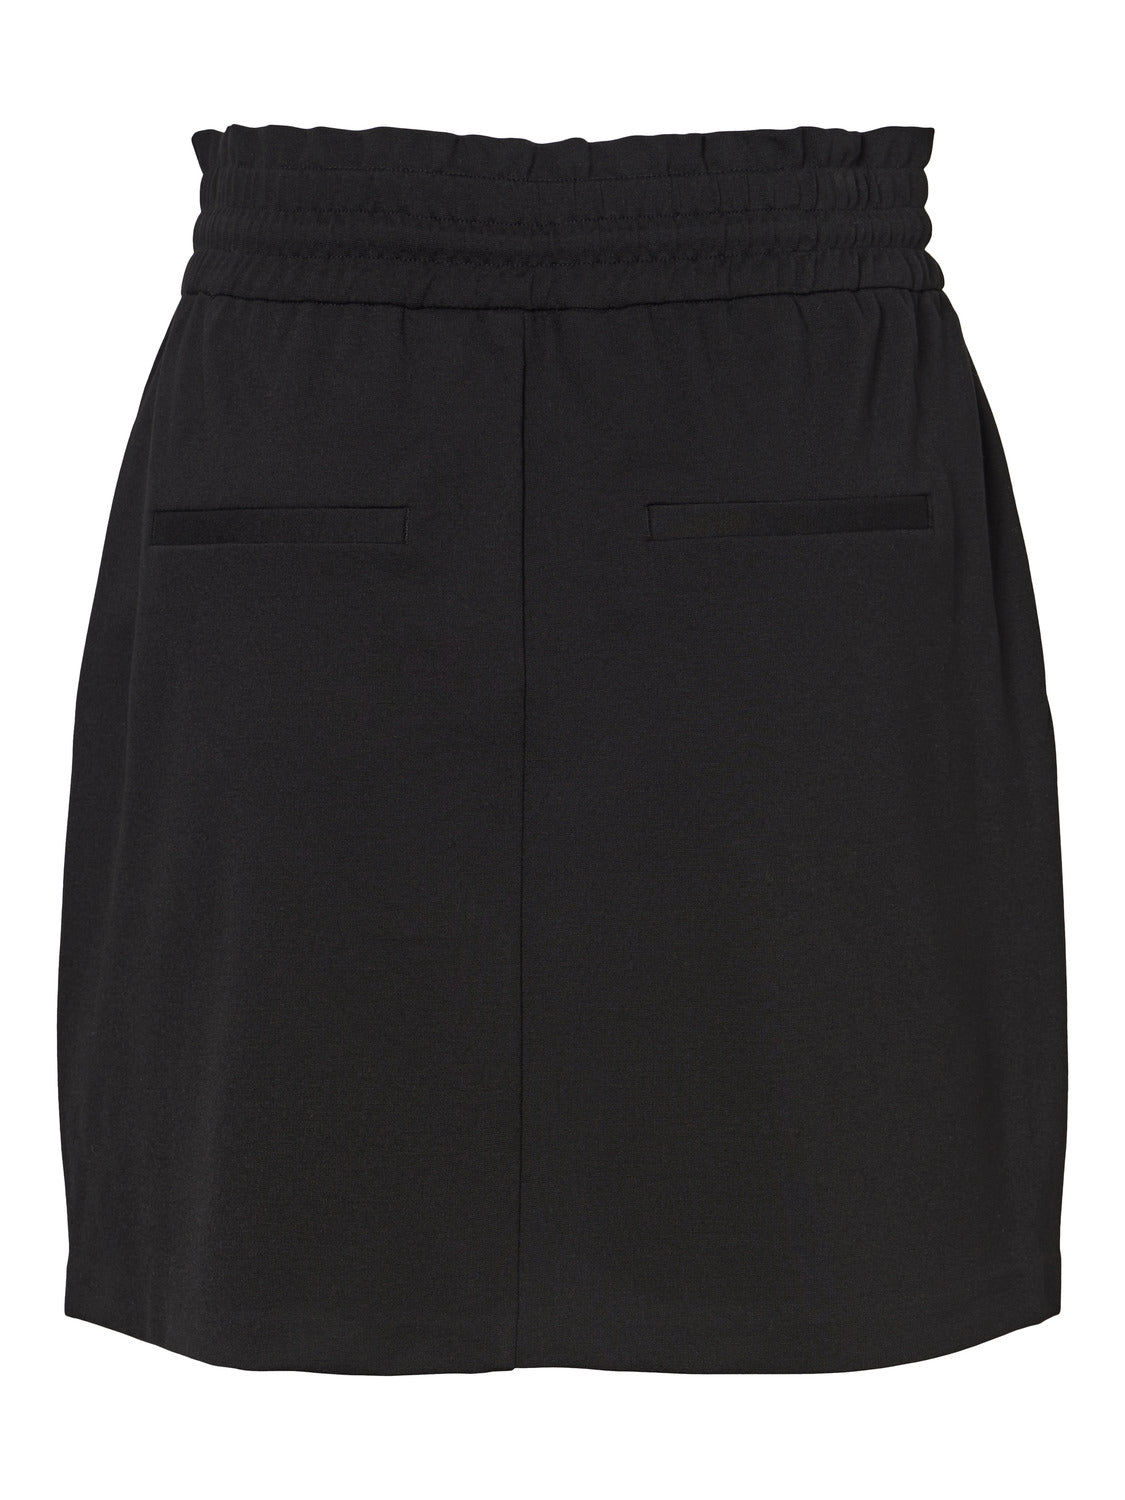 VMEVA Skirt - Black